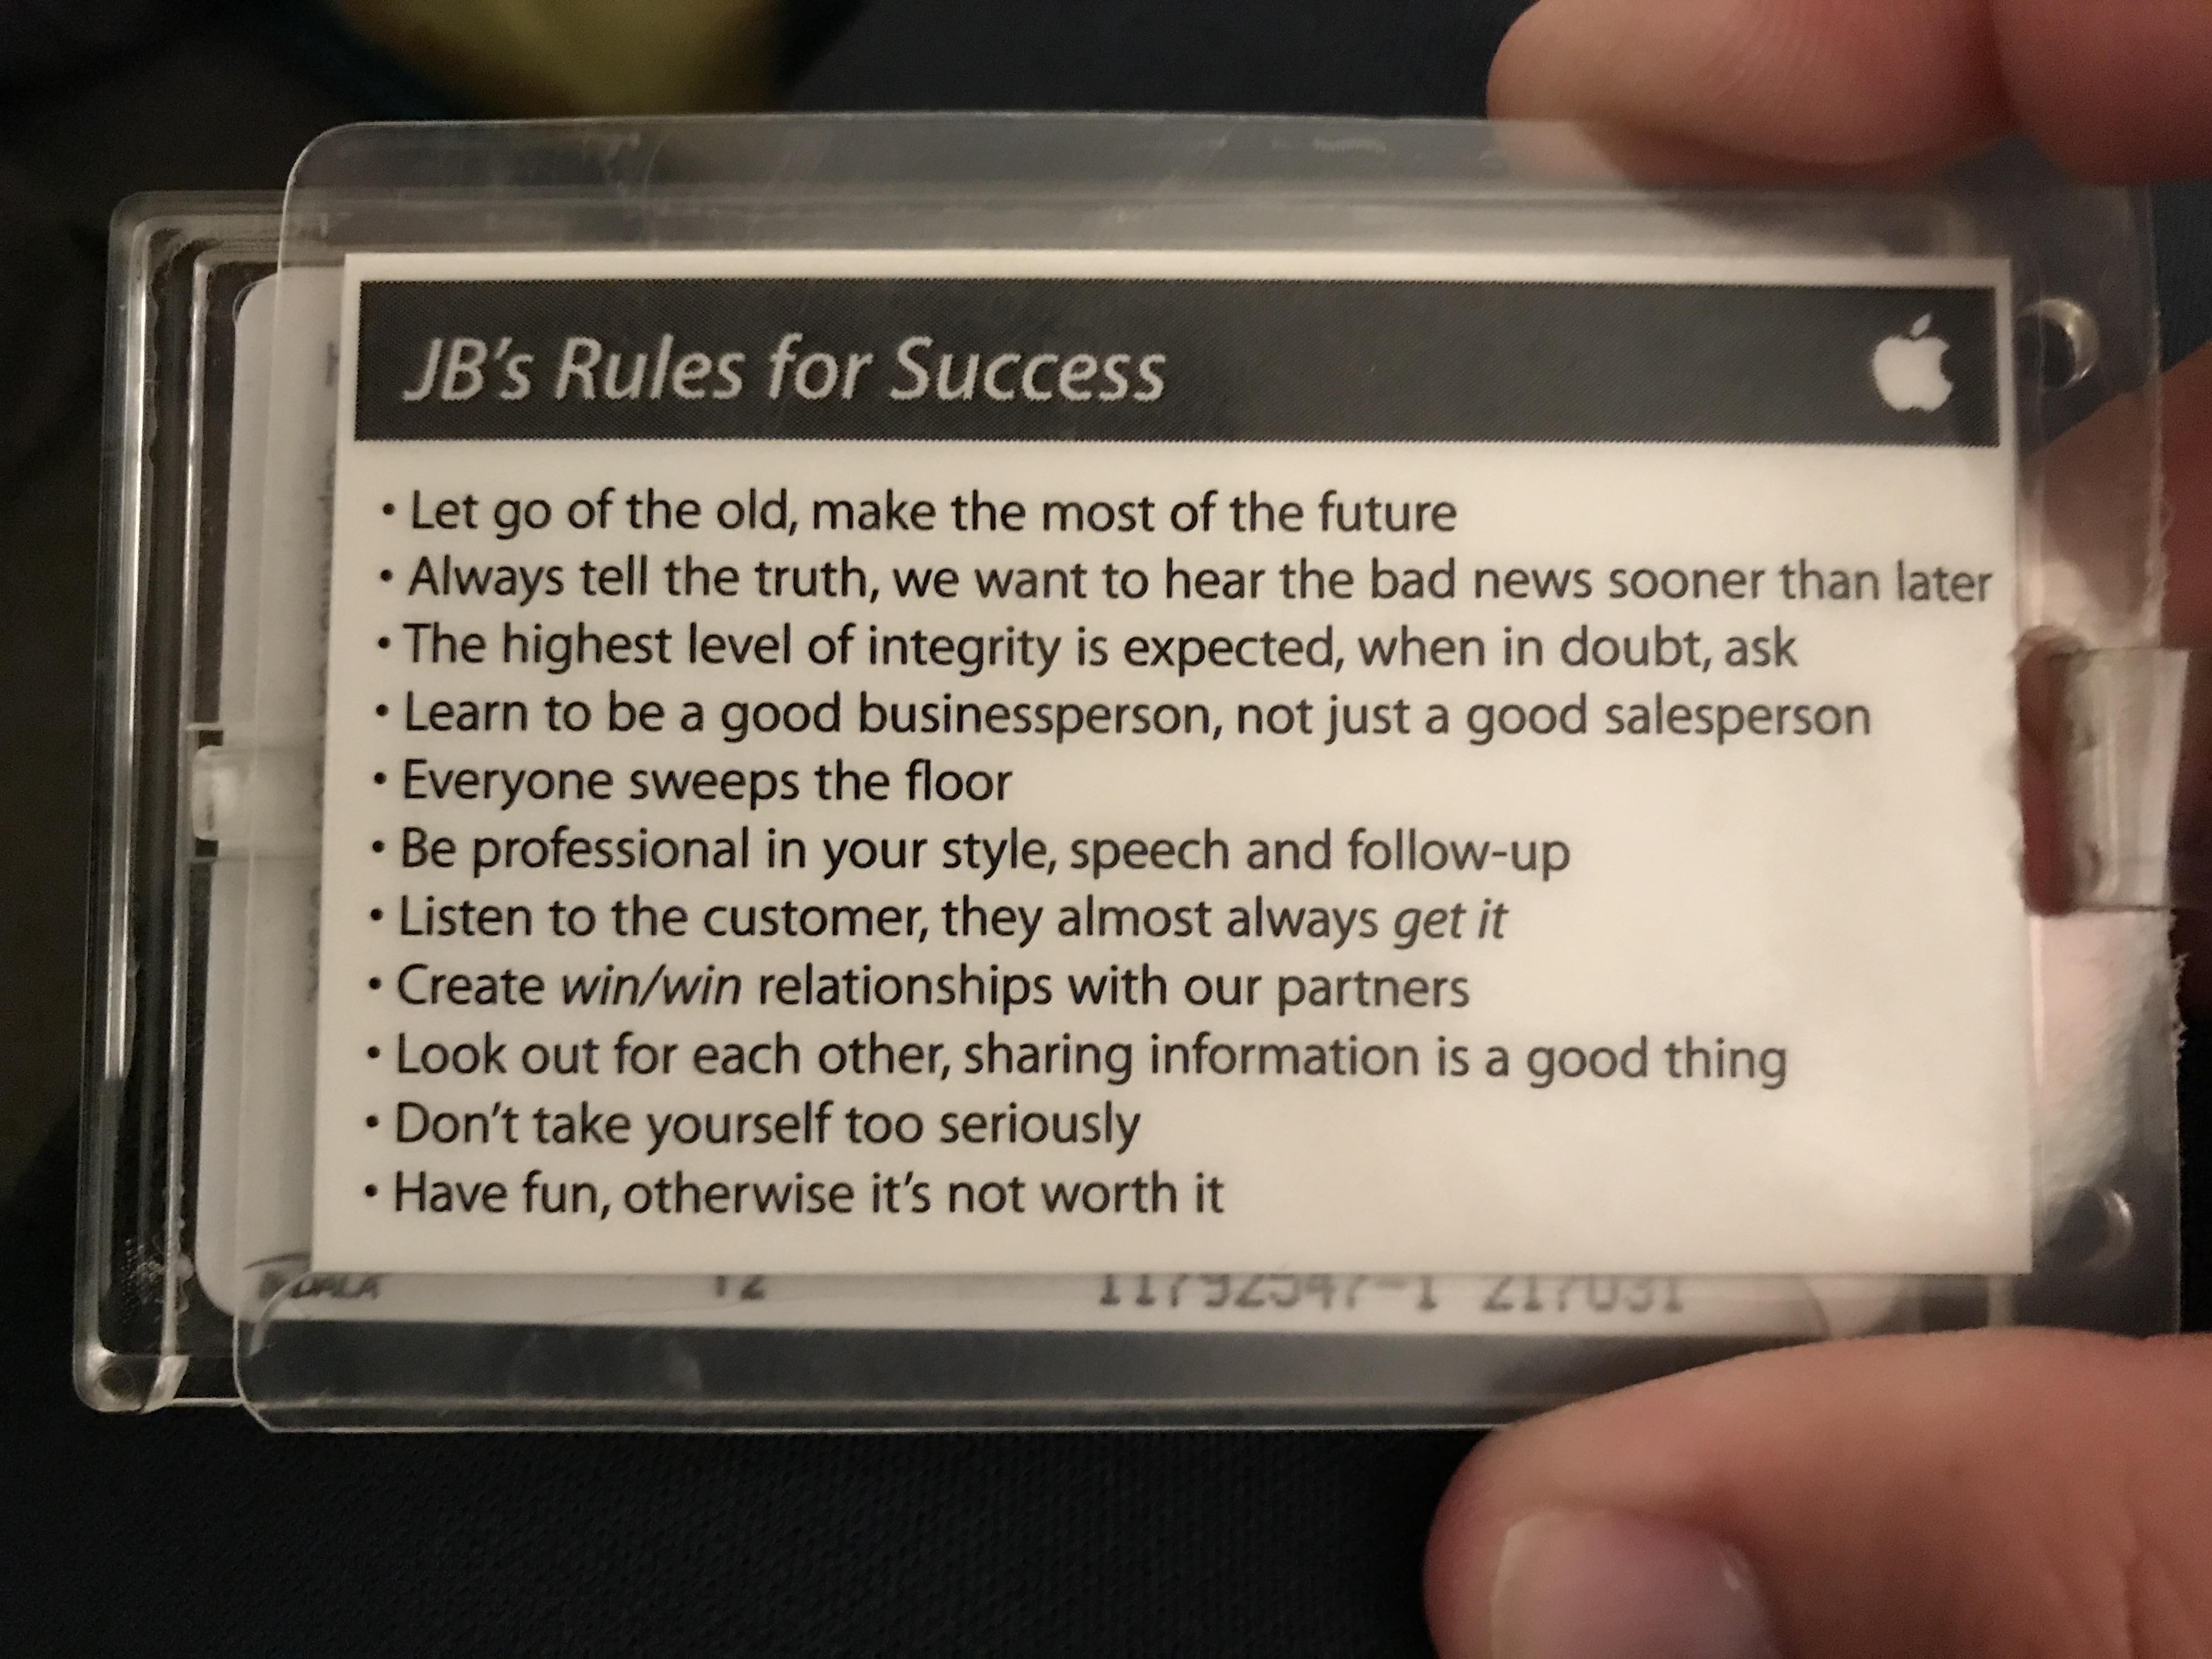 JBs Rule of Success